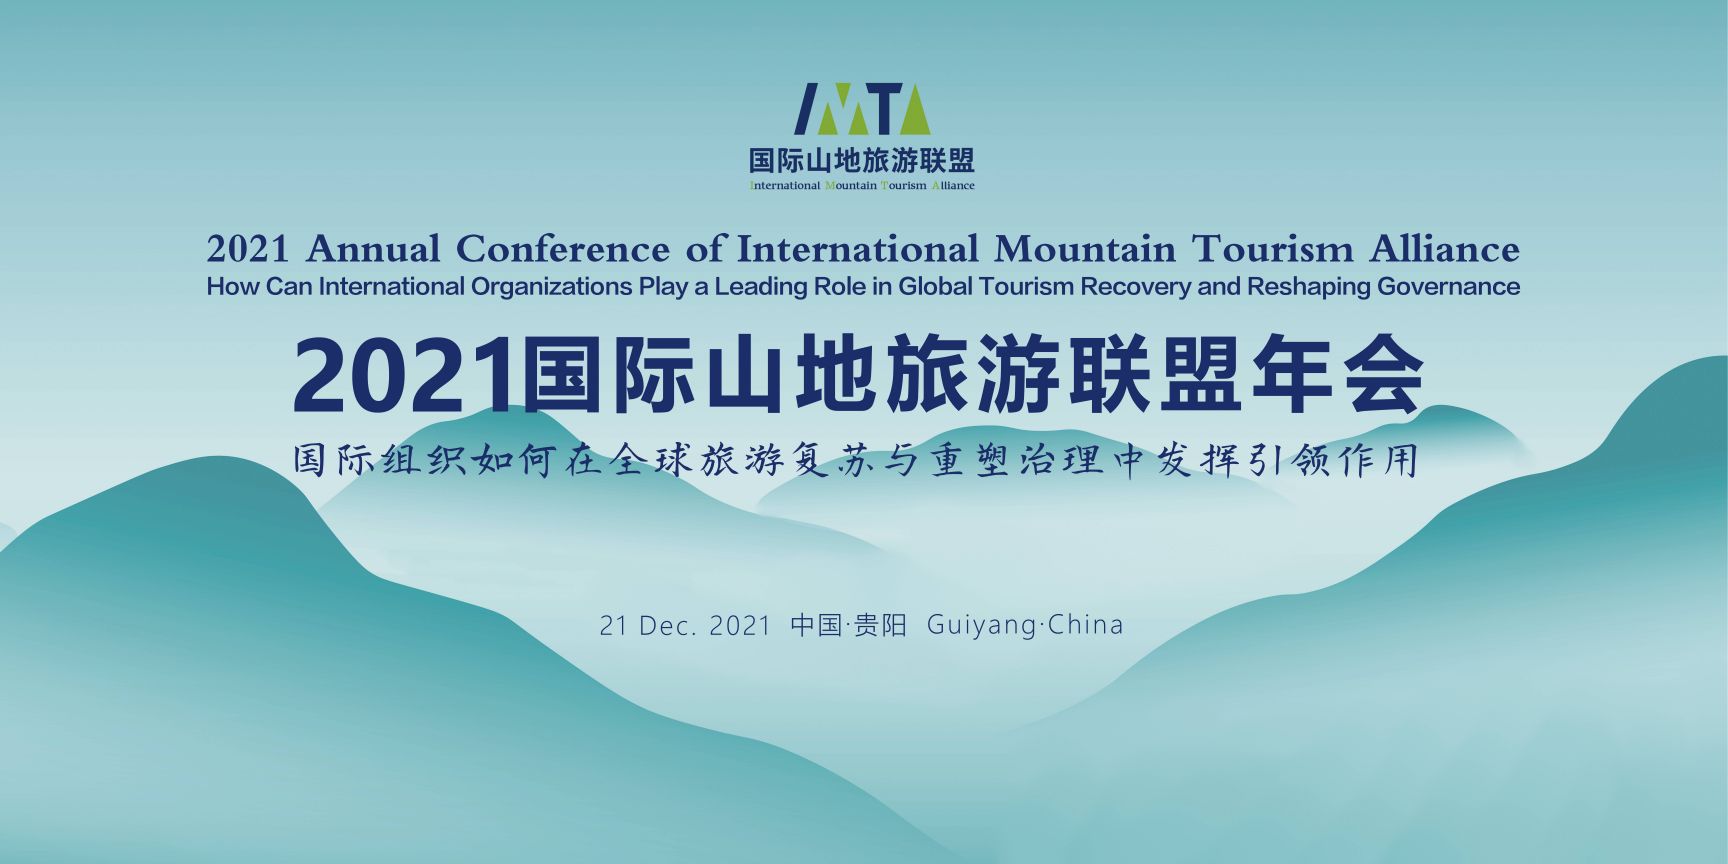 国际组织引领 共商振兴大计 2021国际山地旅游联盟年会即将启幕